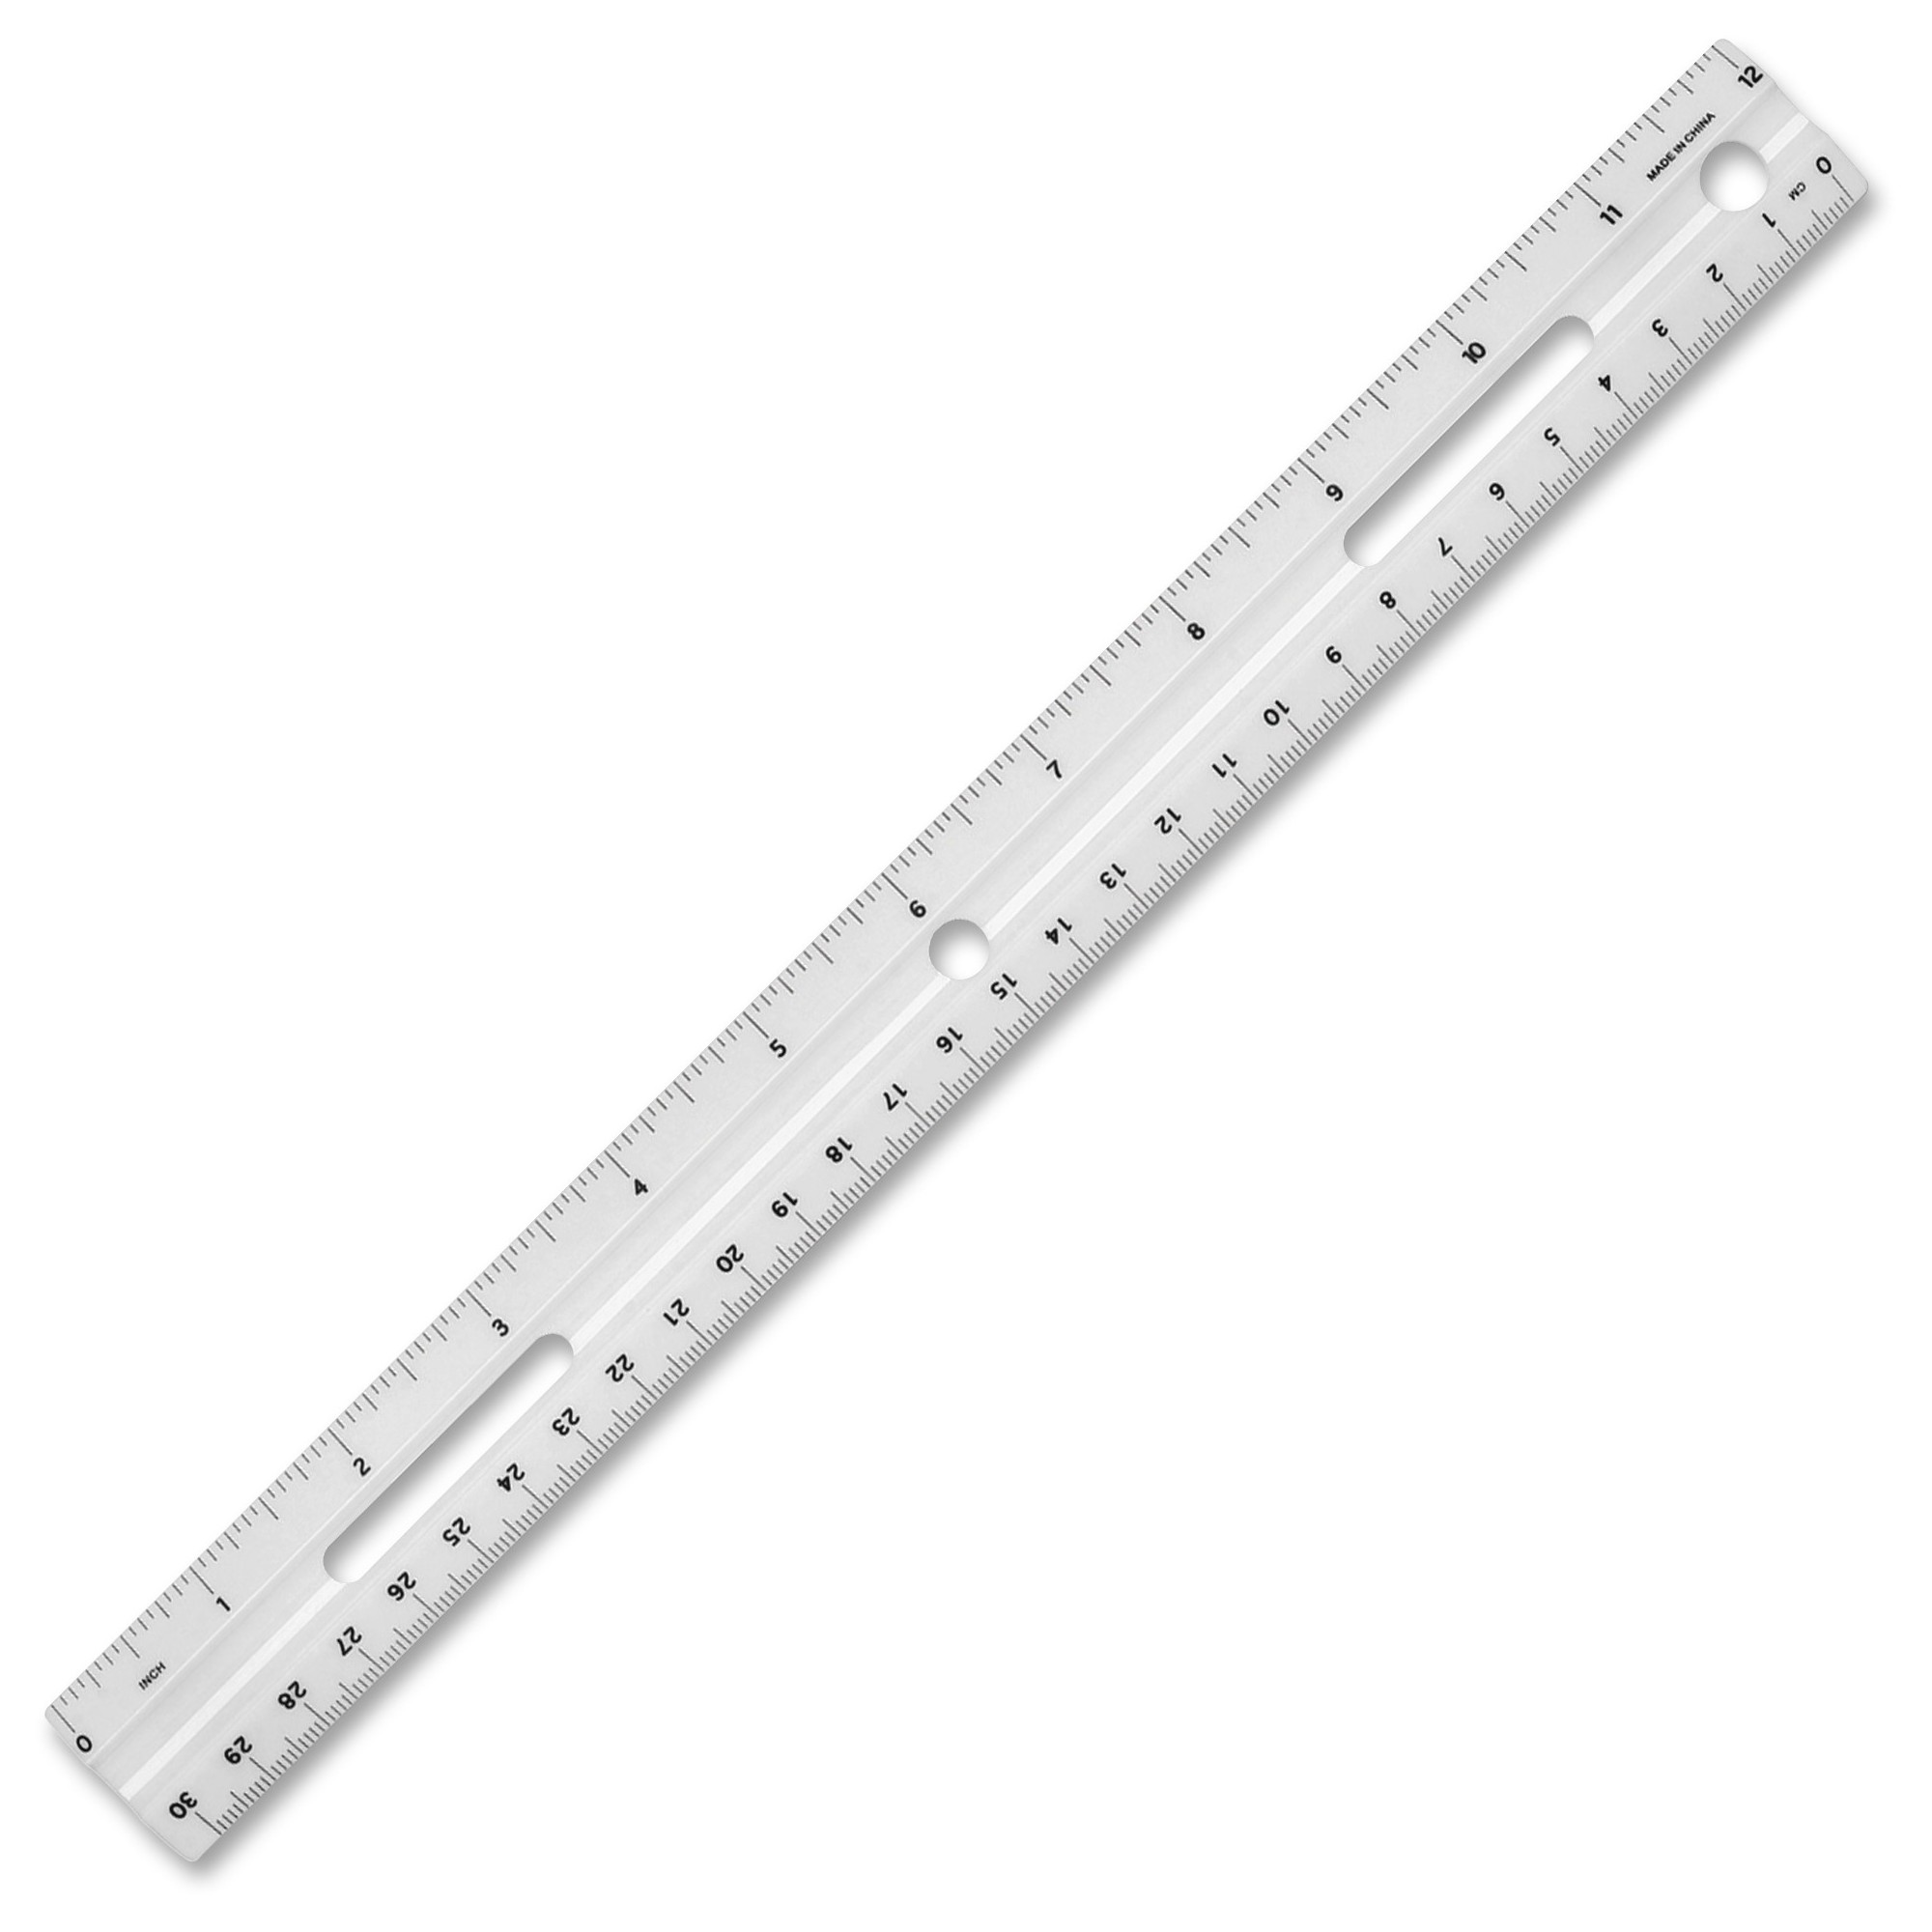 free printable metric ruler